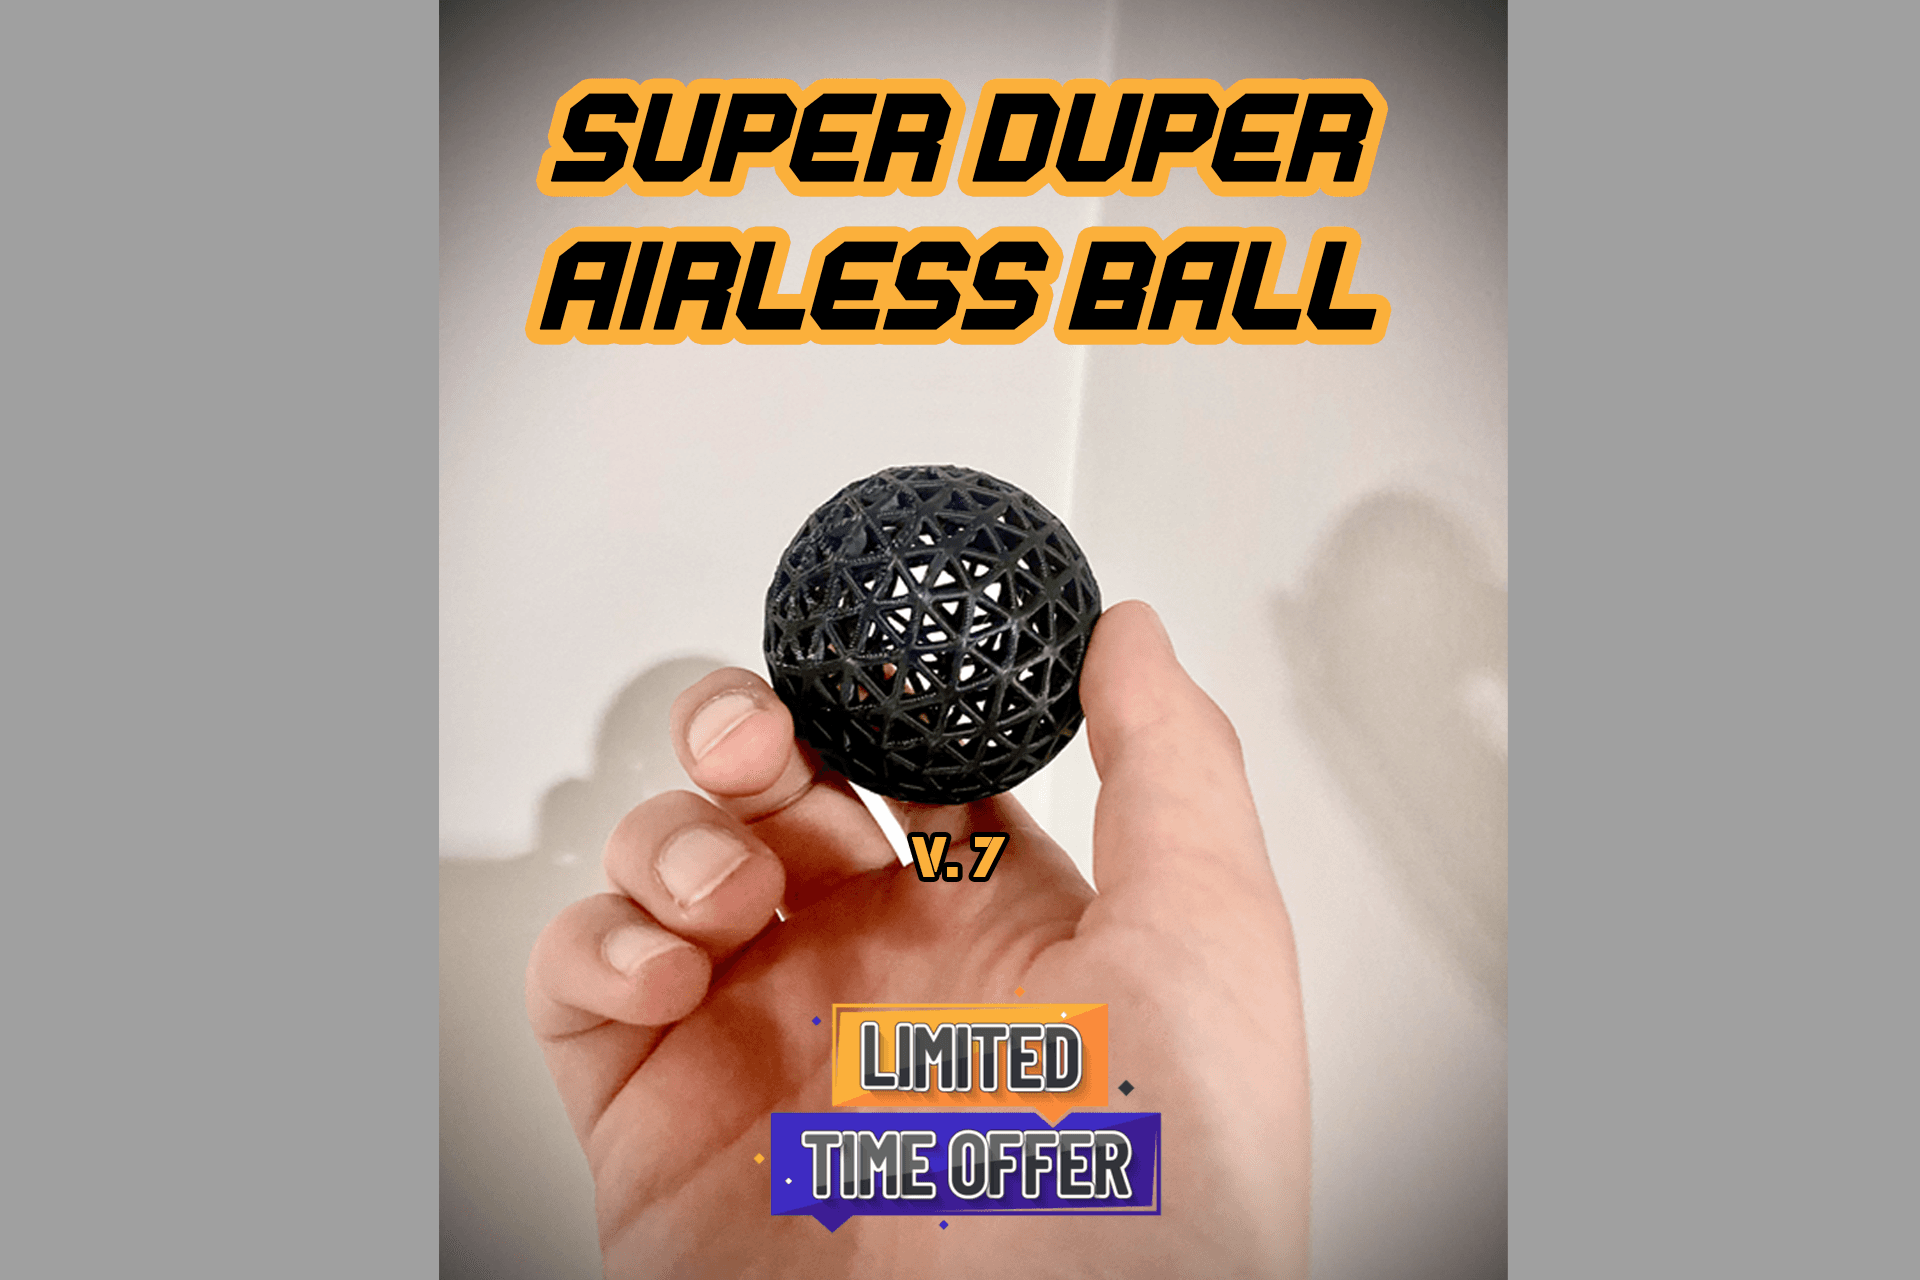 The SUPERDUPER Airless Ball